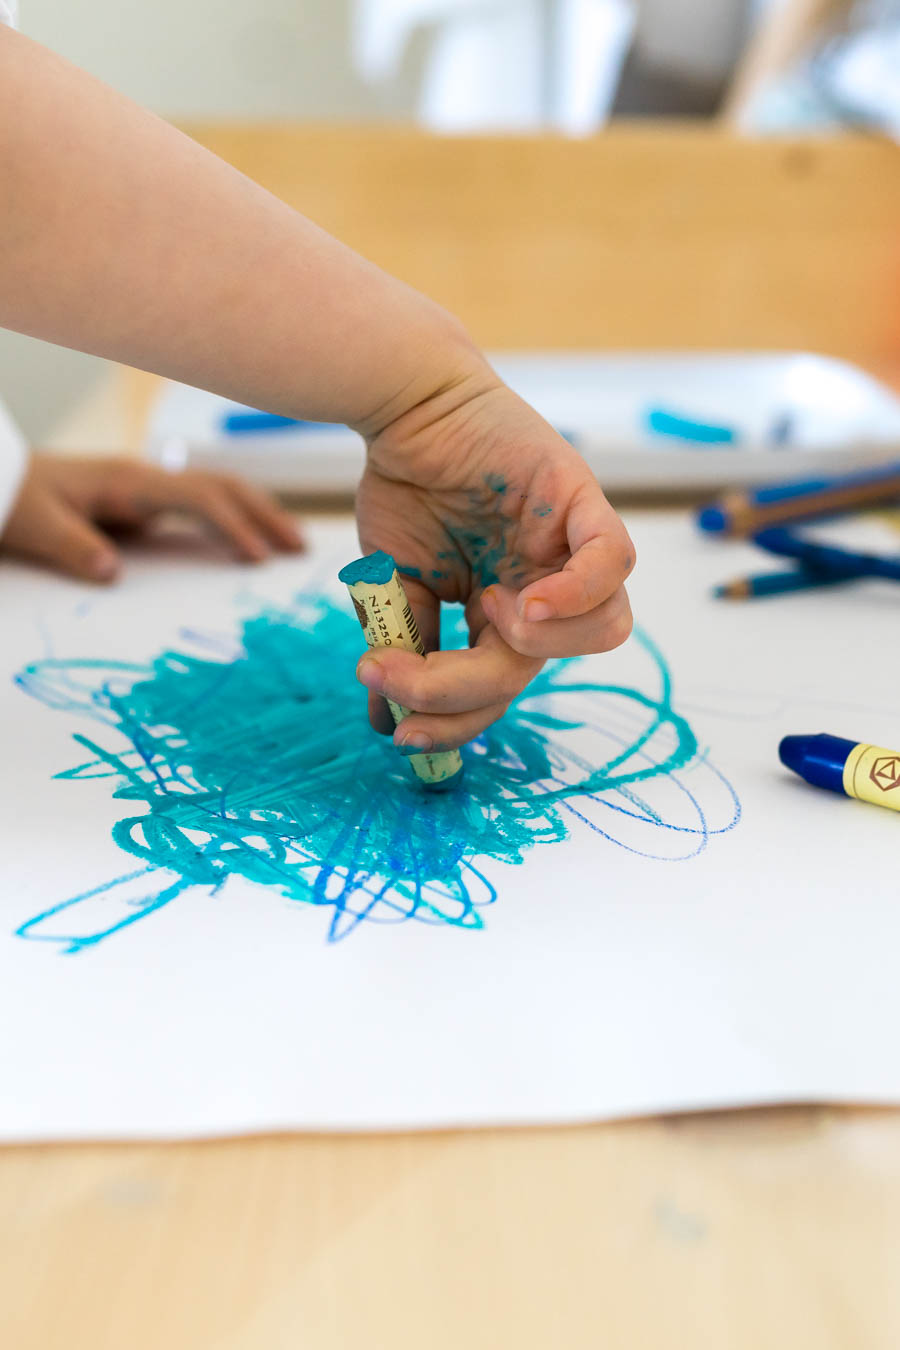 Basteln mit Kleinkindern: Eine Anleitung für Eltern. Wir zeigen euch, eine einfache Idee der „kreativen Einladungen“. Dabei können Kinder ohne Erwartungsdruck oder Vorgaben basteln und malen. Und spielerisch Farben, Formen und Konsistenzen entdecken. Einfache Bastelideen für Kinder, in der Kita, Kindergarten und zu Hause. Basteln mit Kindern findet ihr auf dem Blog: www.chezmamapoule.com #malspiel #unerzogen #montessori #spielideen #attachmentparenting #freiesmalen #freiesbasteln 